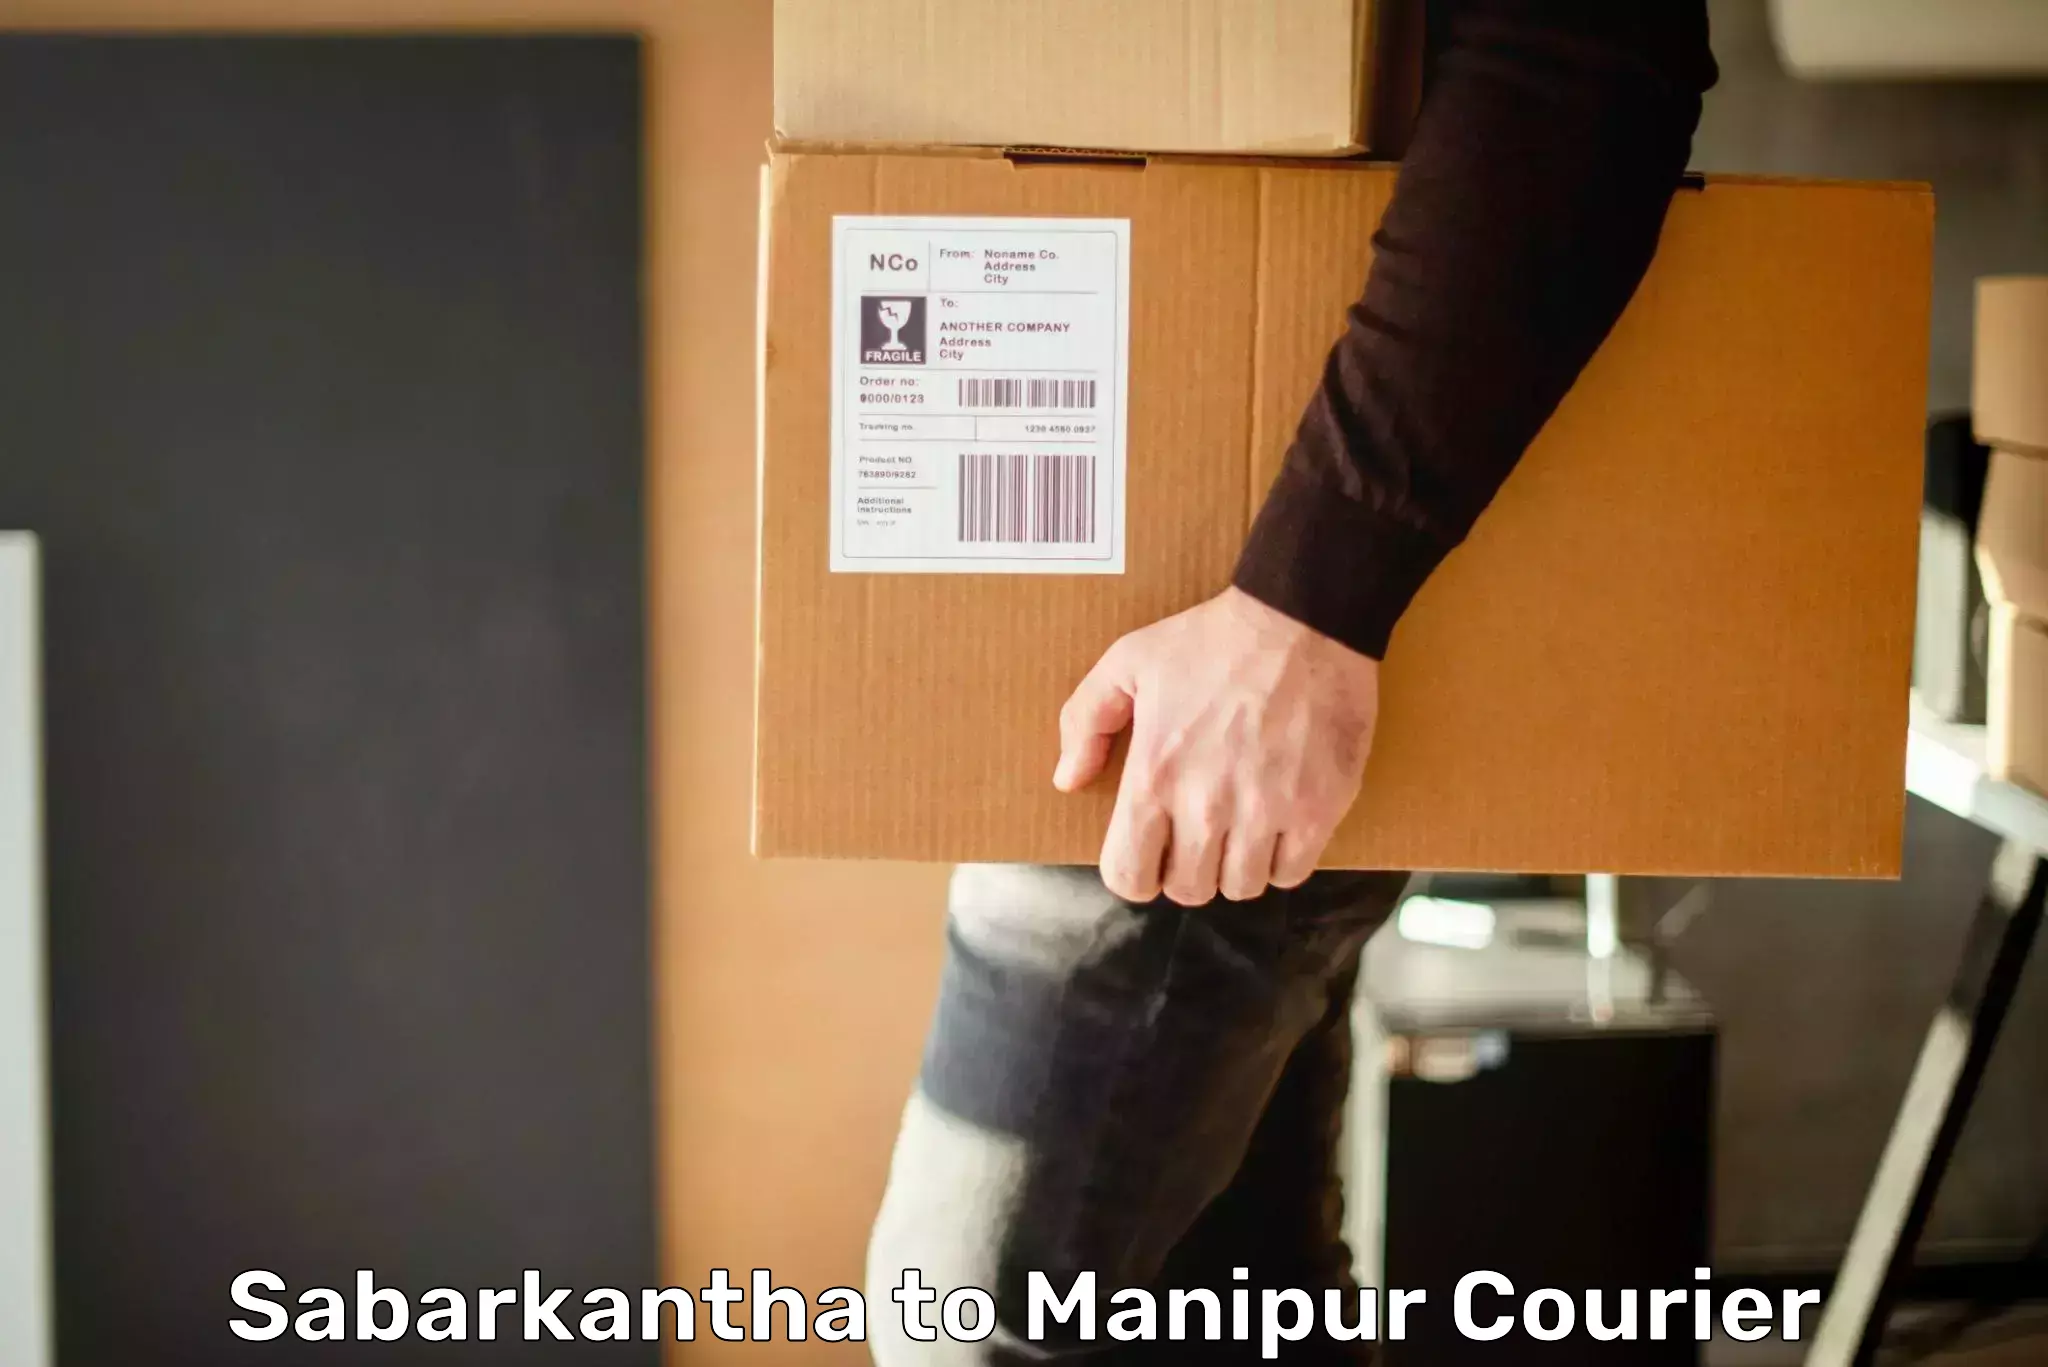 Premium courier solutions Sabarkantha to Churachandpur